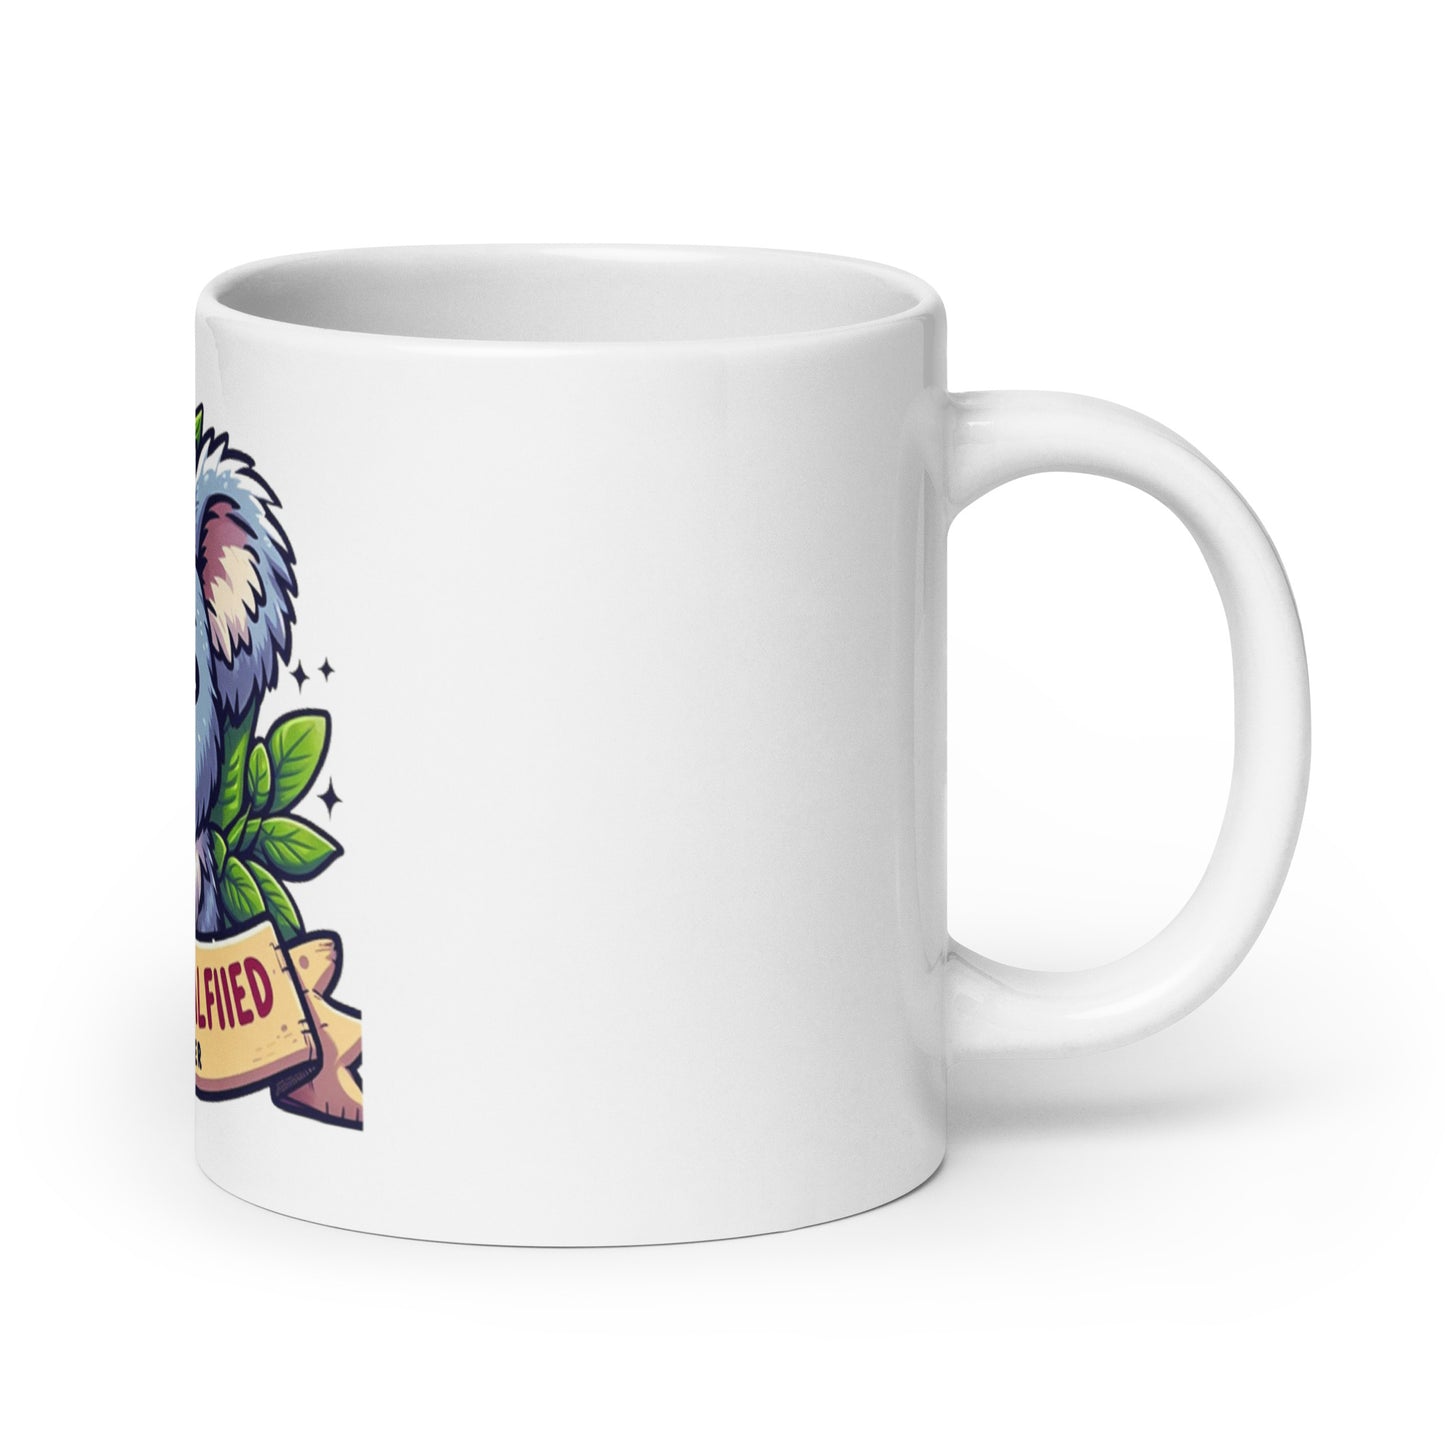 Koalified Developer mug